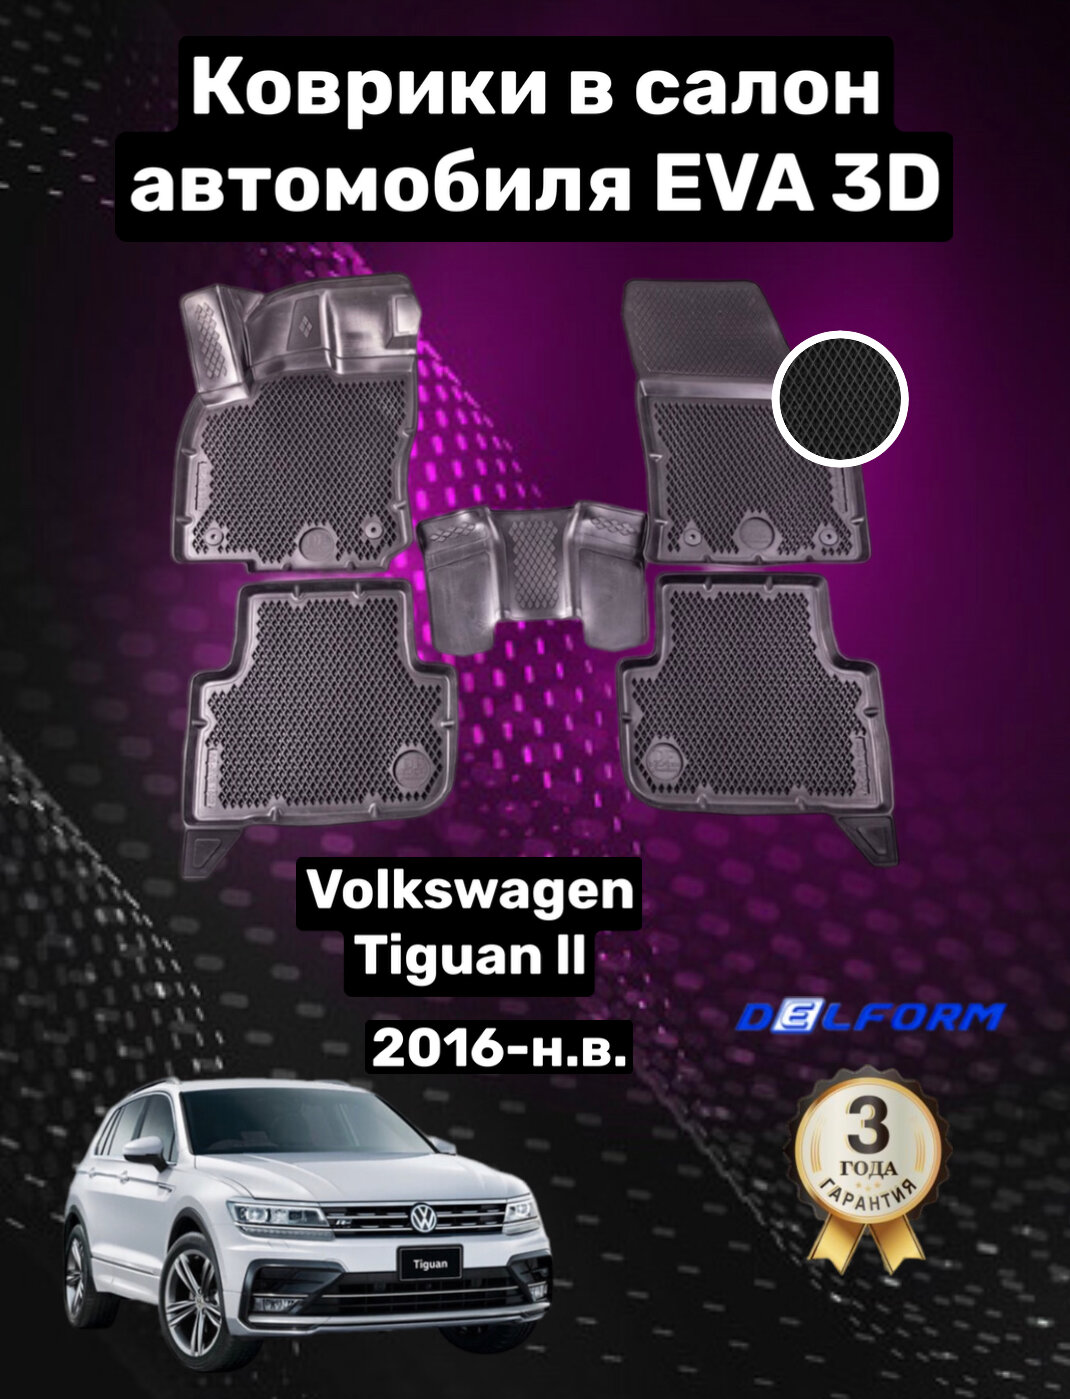 Эва/Eva/Ева коврики c бортами Фольксваген Тигуан 2 (2016-)/Volkswagen Tiguan II (2016-) DELFORM 3D Premium ("EVA 3D") cалон